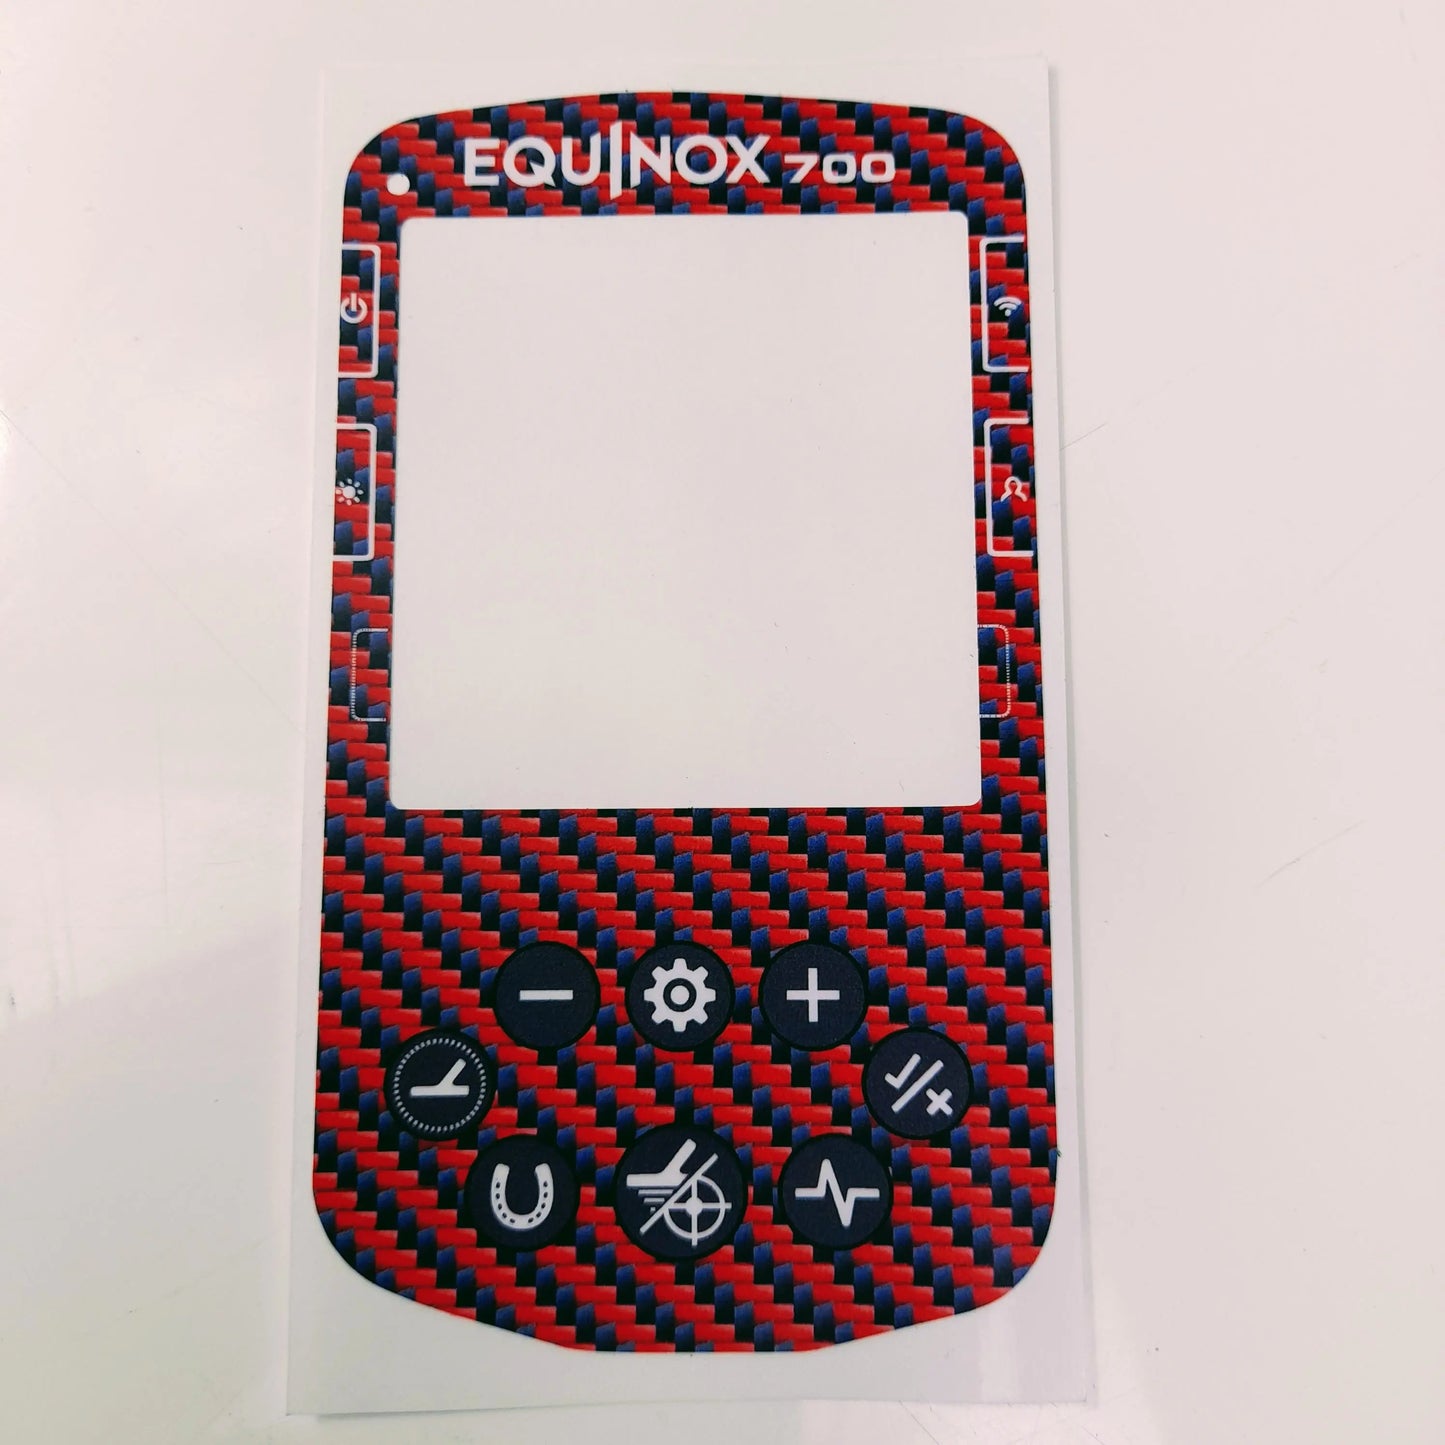 Teleknox Keypad Sticker for Minelab Equinox 700 LionOx Distribution (XPAU)